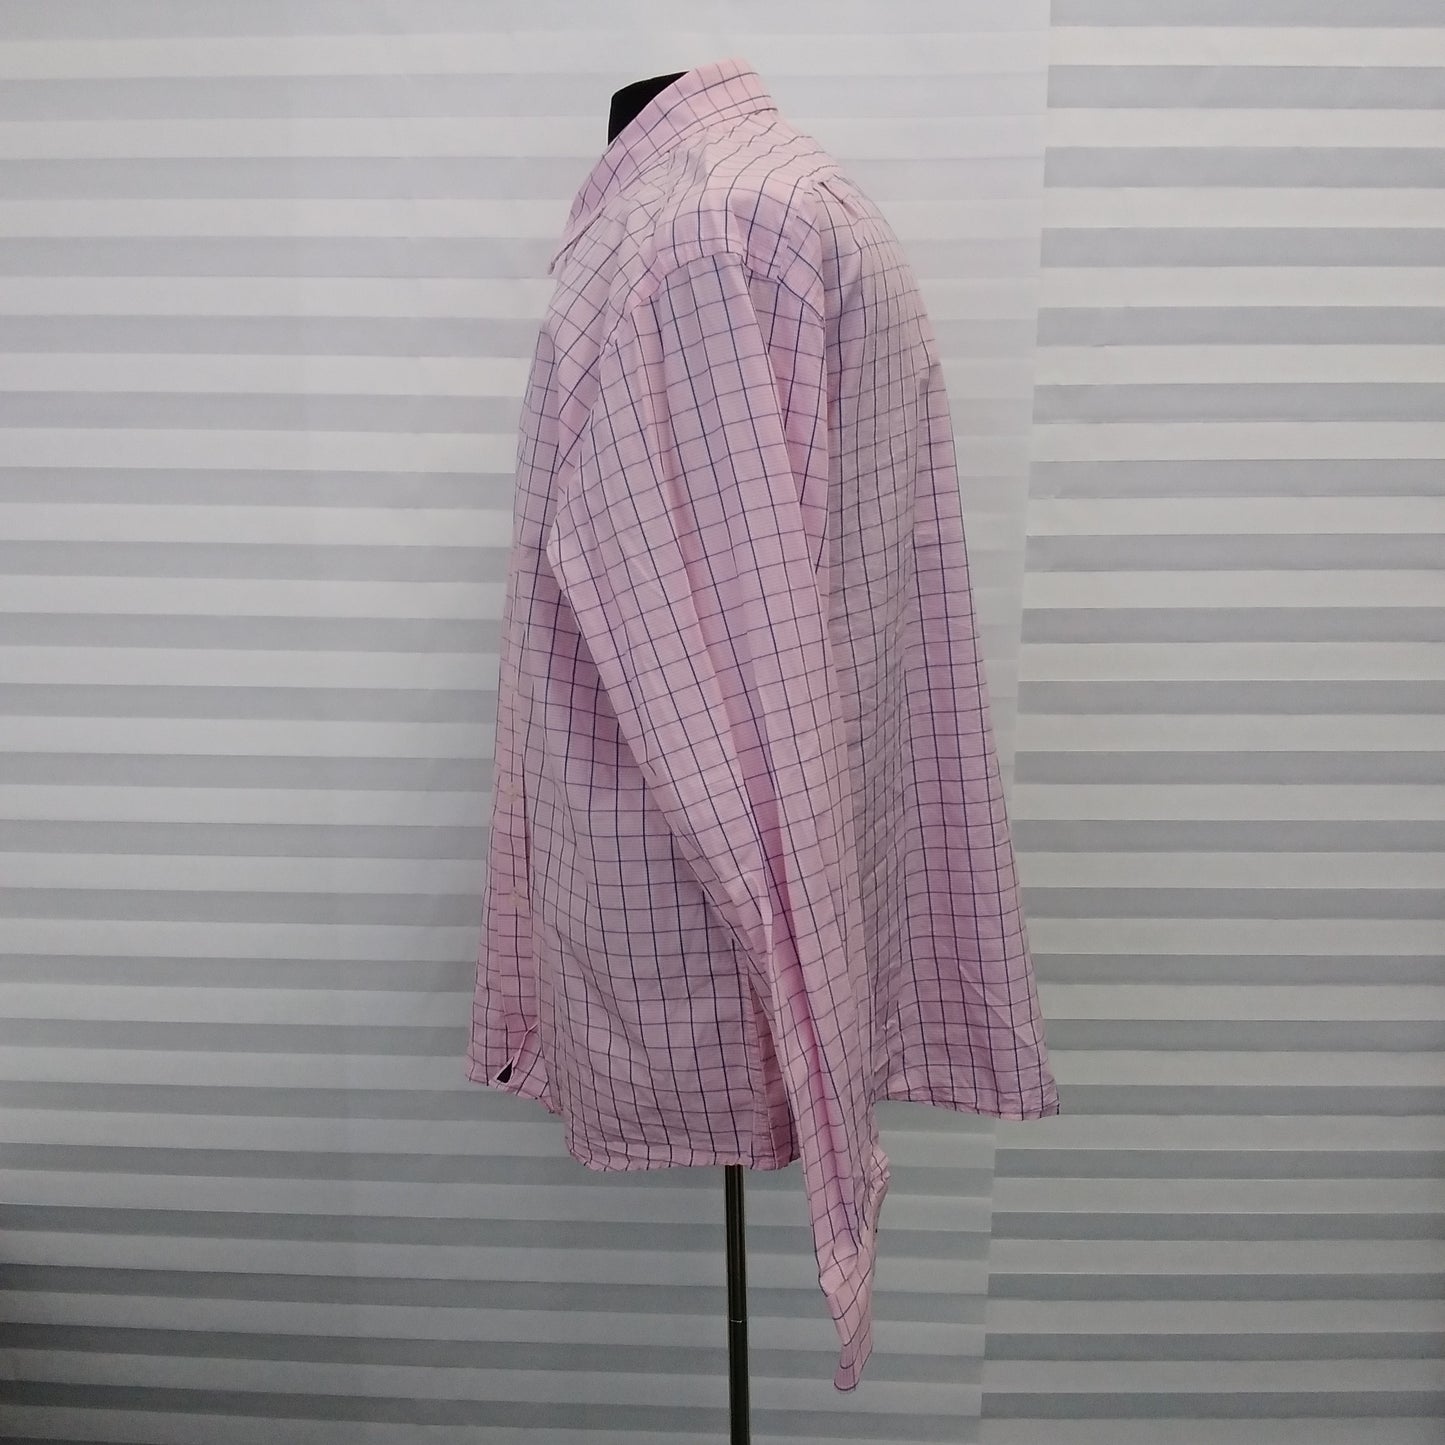 Untuckit Pink Blue Check Long Sleeve Button Up Shirt - XXL